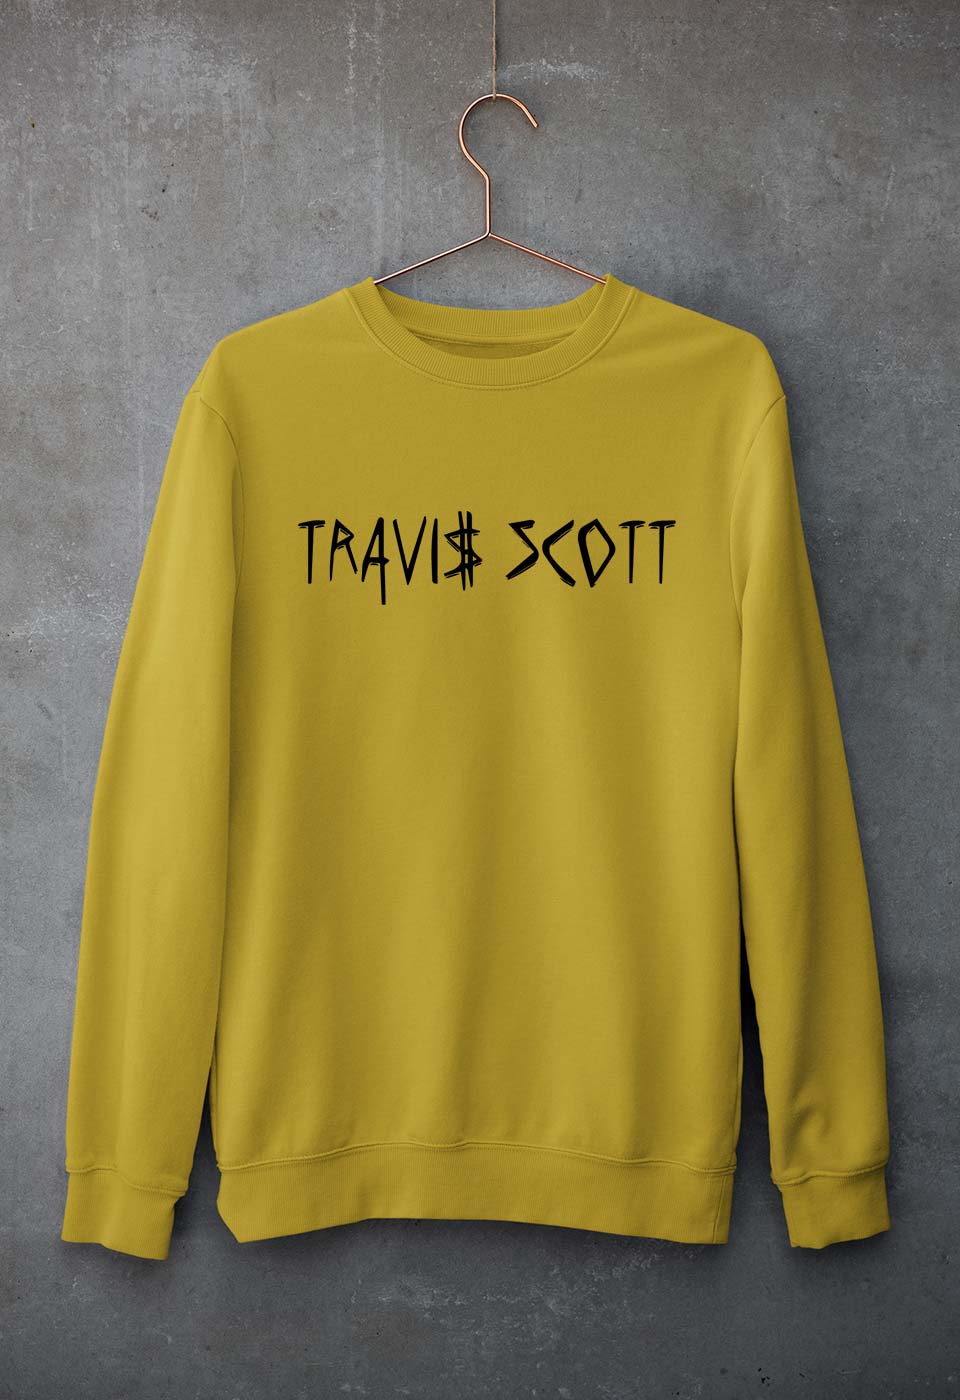 Astroworld Travis Scott Unisex Sweatshirt for Men/Women-S(40 Inches)-Mustard Yellow-Ektarfa.online